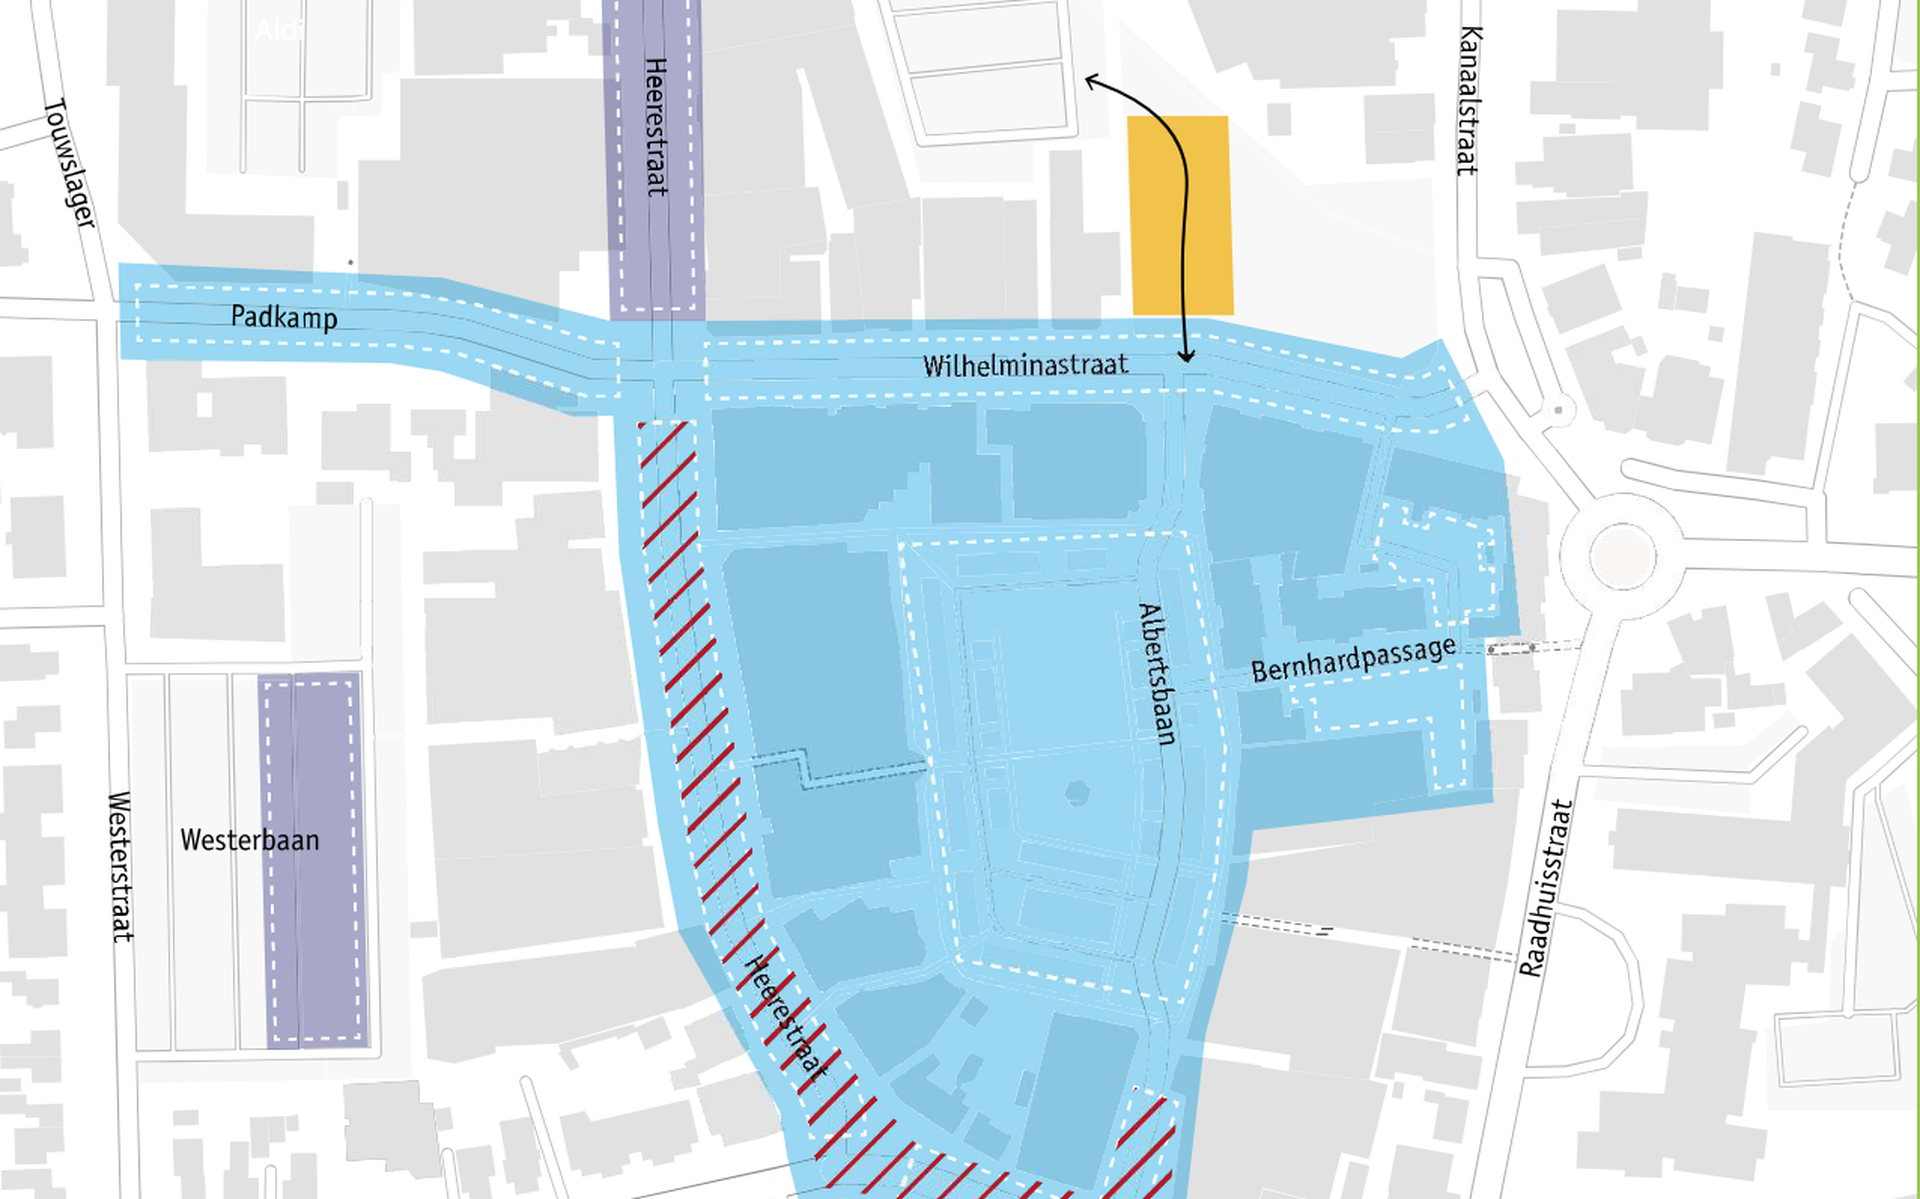 Lichtblauwe markering: parkeerschijfzone sinds 2021. Paarse markering: uitbreidingen. Gele markering: tijdelijke parkeerplekken. Rood-gestreepte markering: werkzaamheden tot en met de bouwvak 2023.